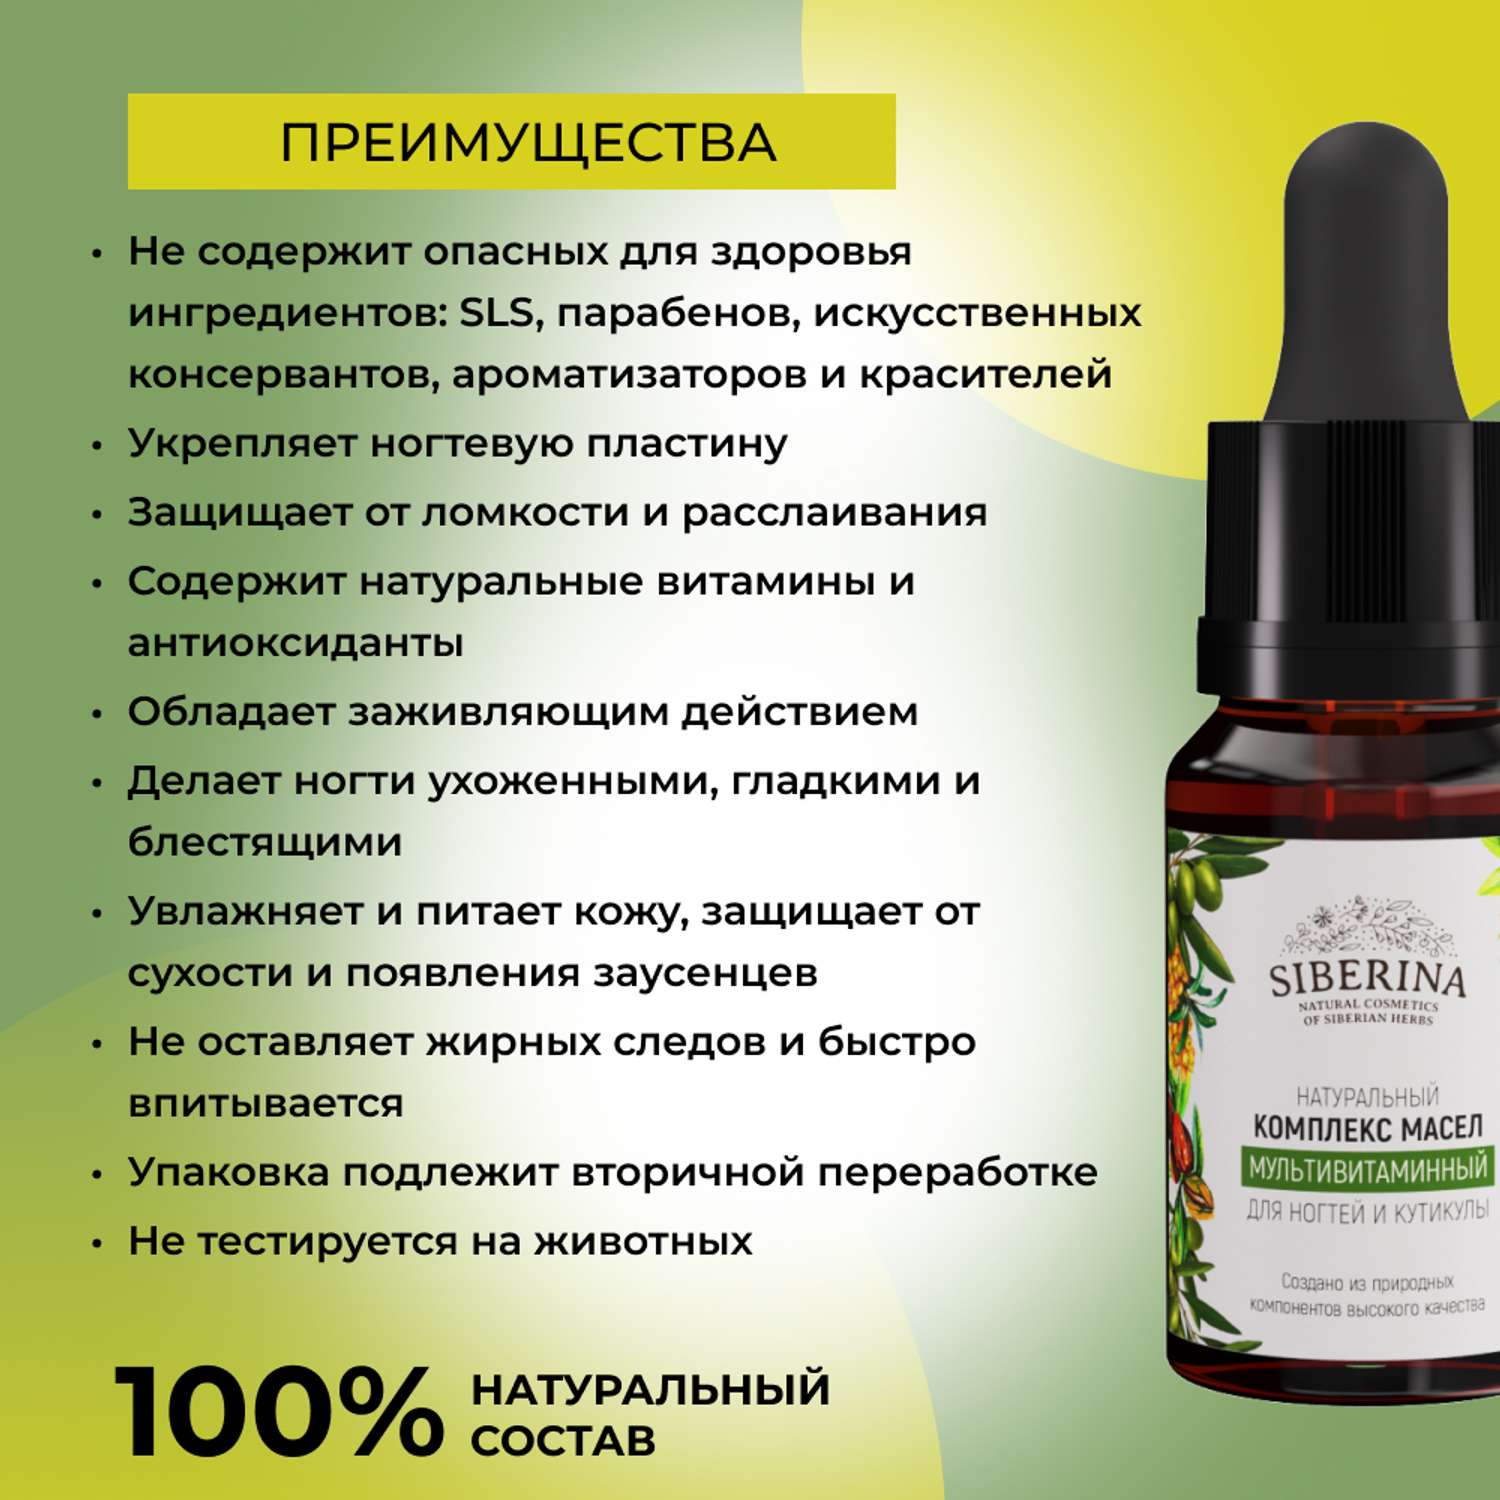 Комплекс масел Siberina натуральный «Мультивитаминный» для ногтей и кутикулы 10 мл - фото 3